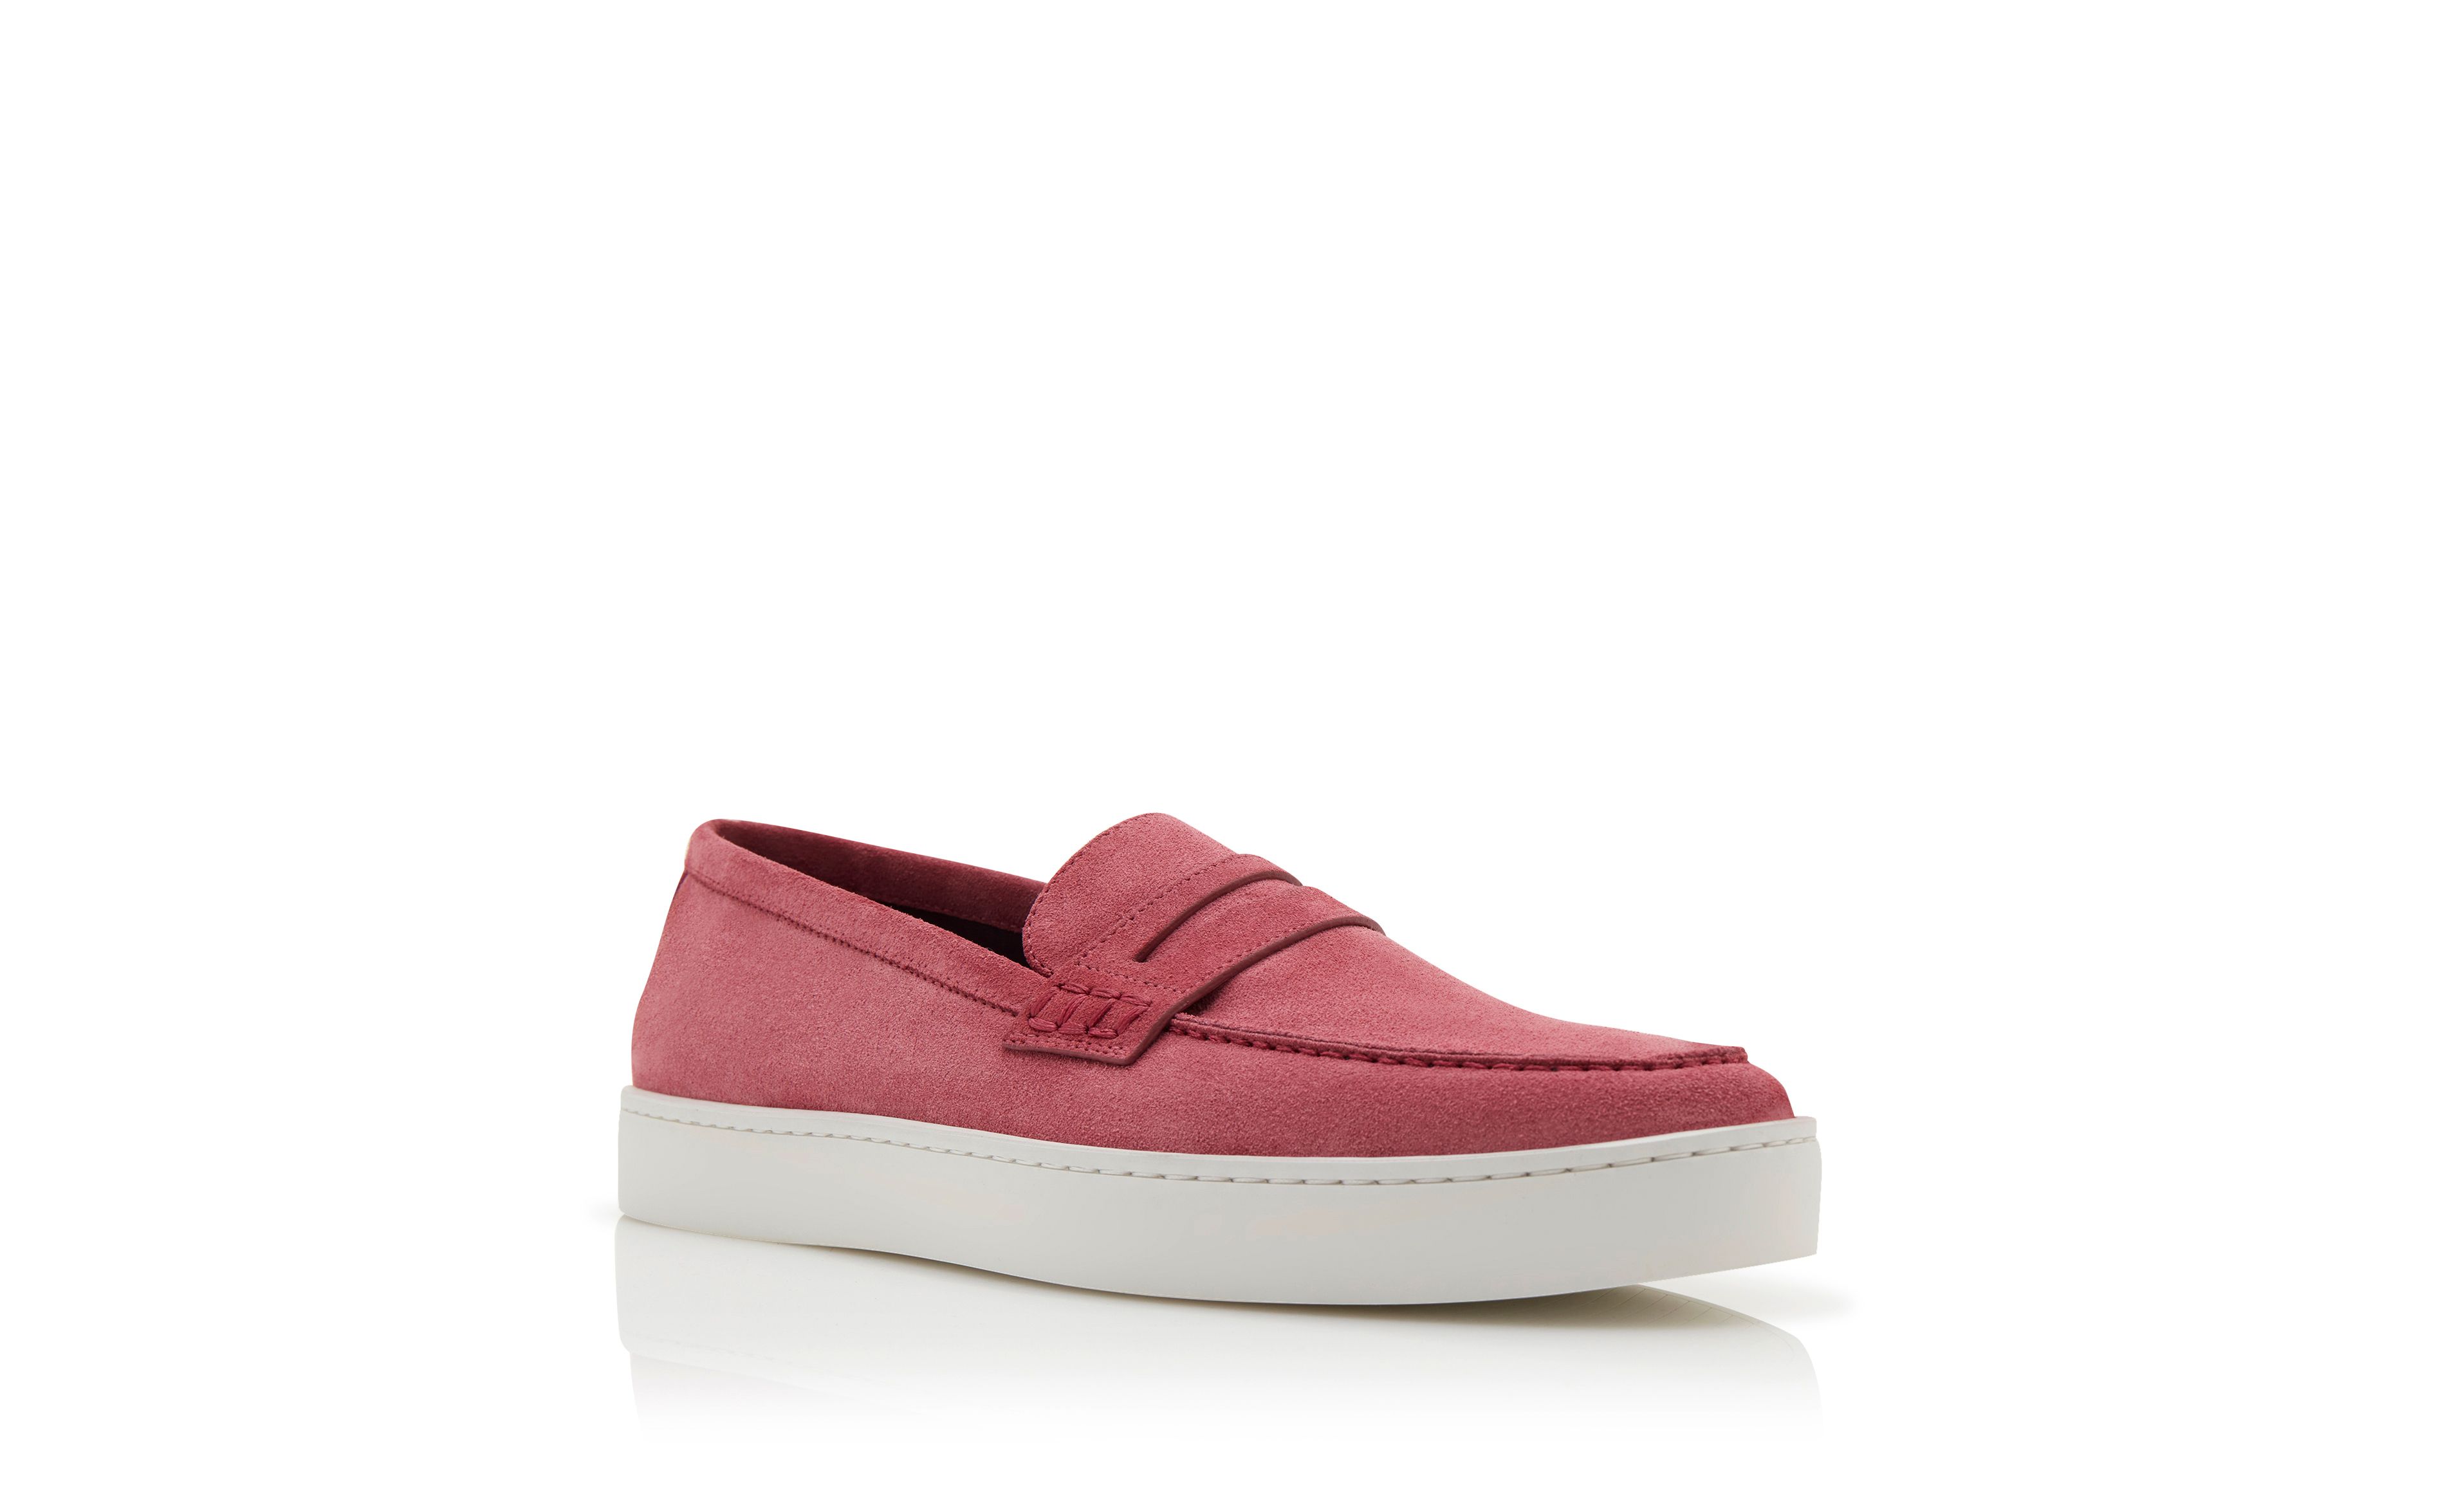 Designer Pink Suede Slip On Loafers - Image Upsell